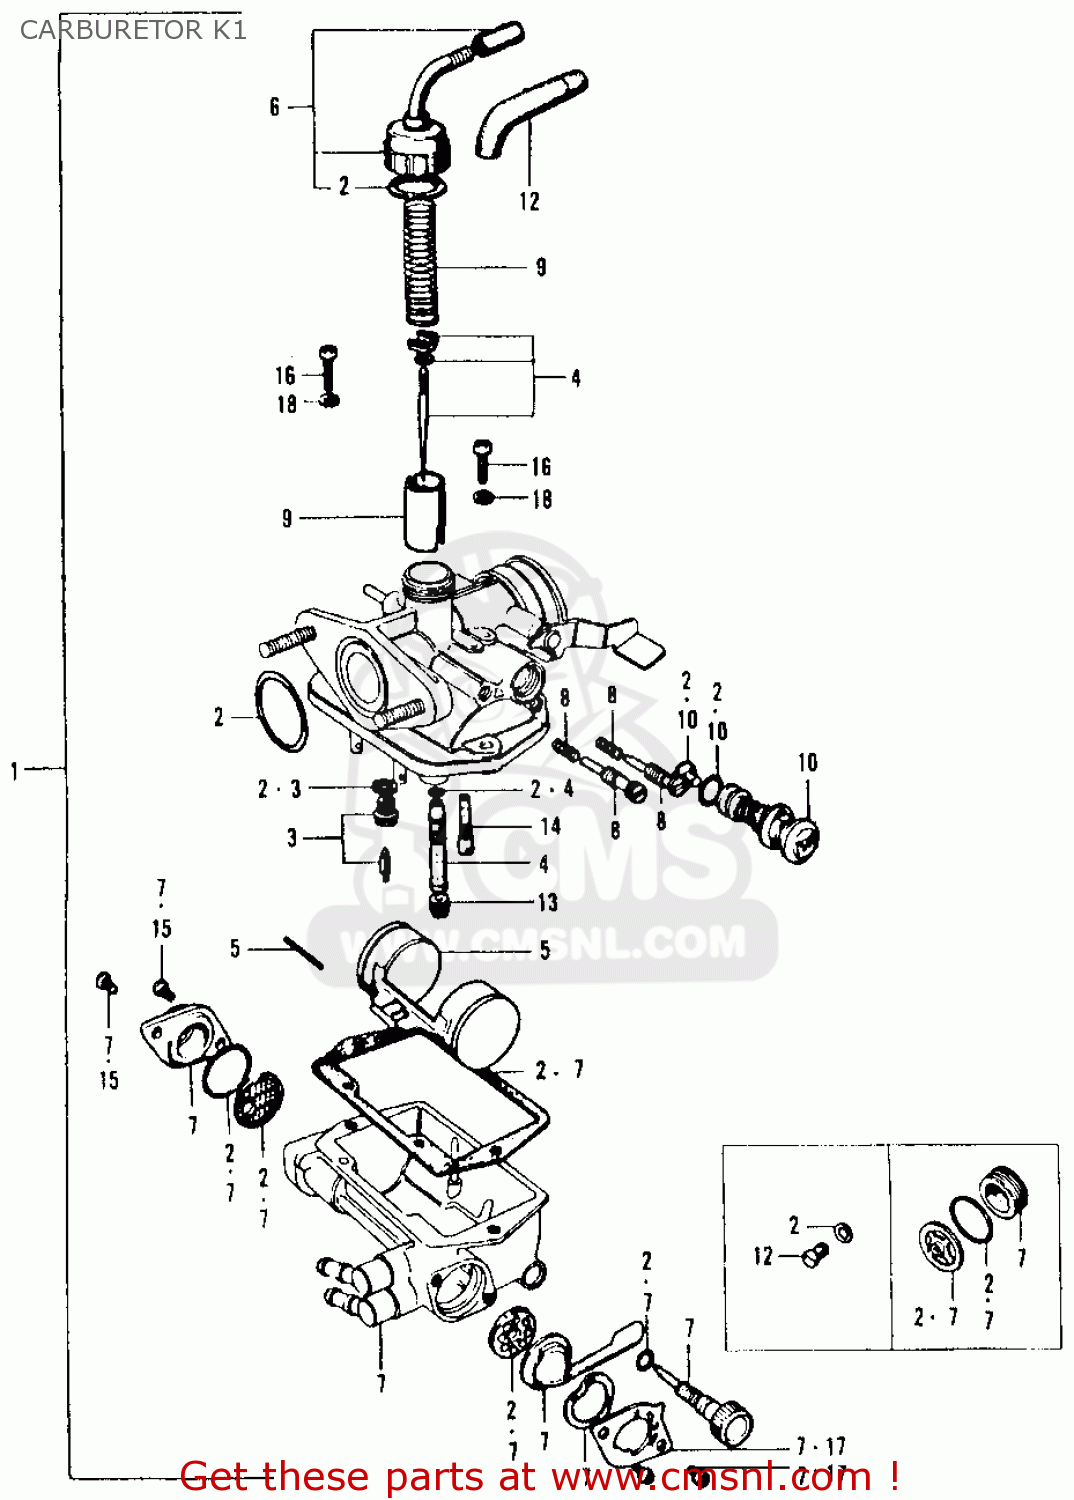 1969 Honda ct90 carburetor